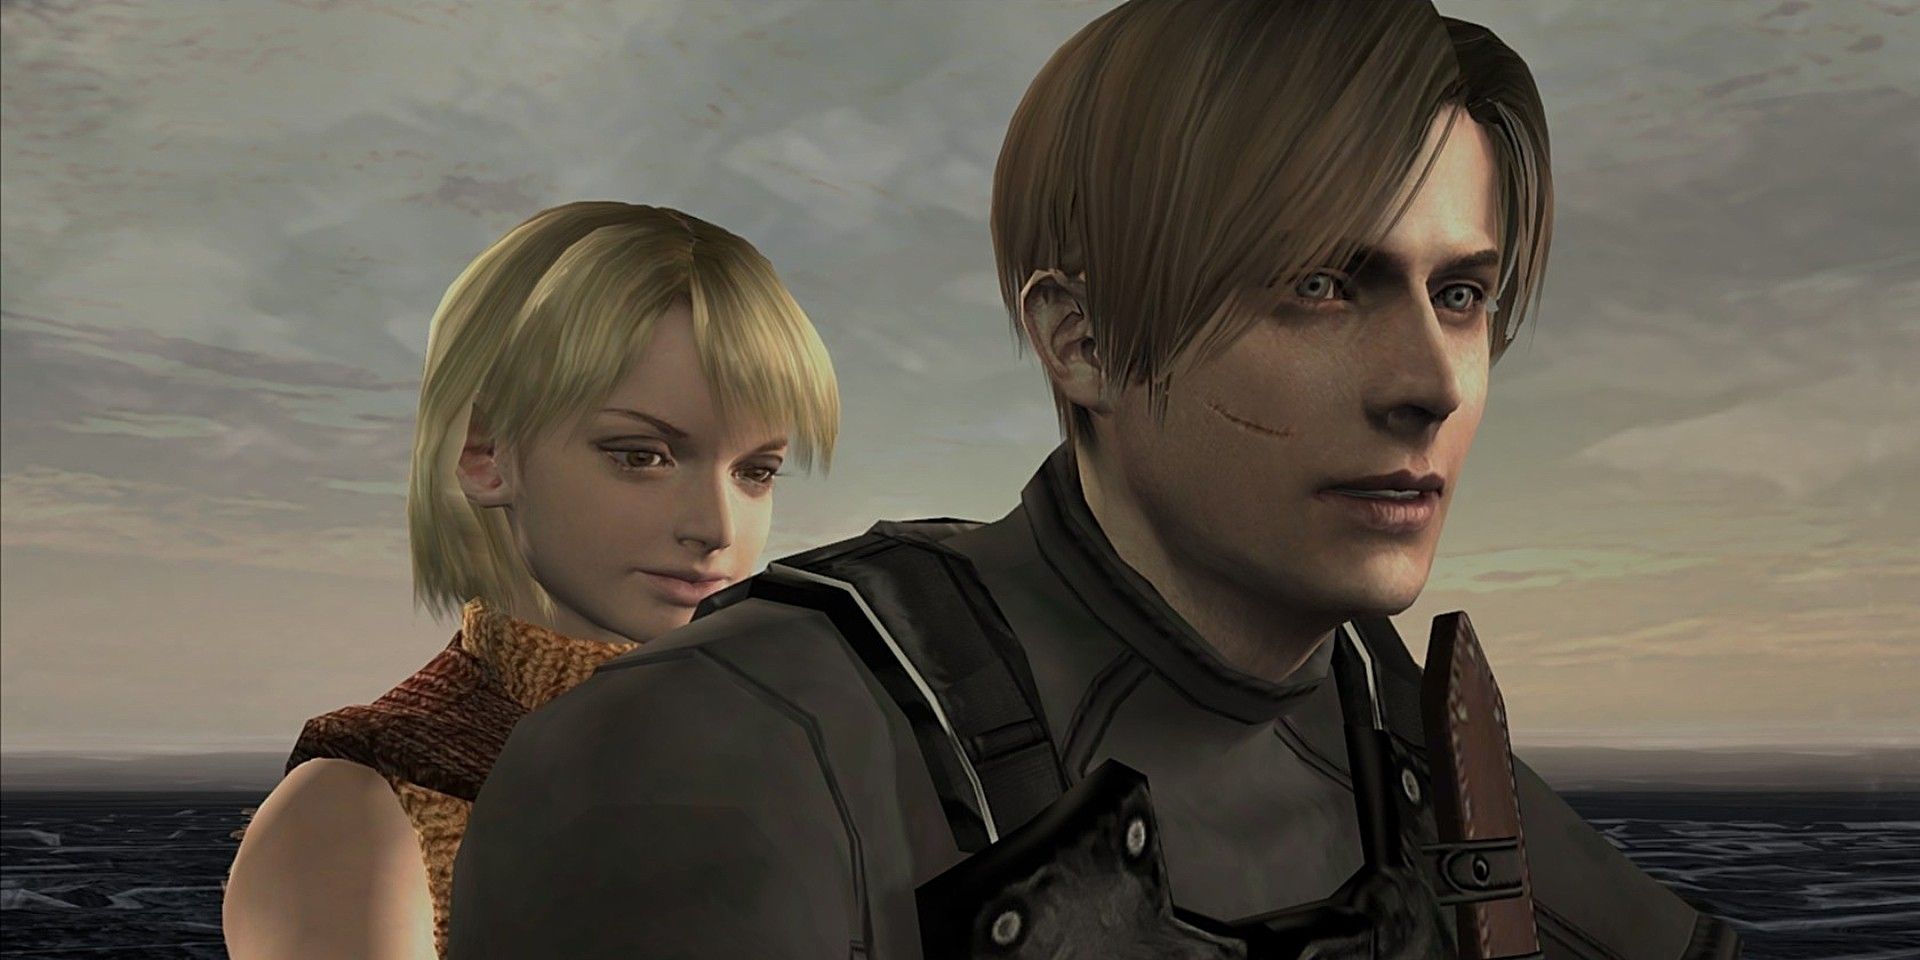 Ashley Graham (Resident Evil 4 Remake)